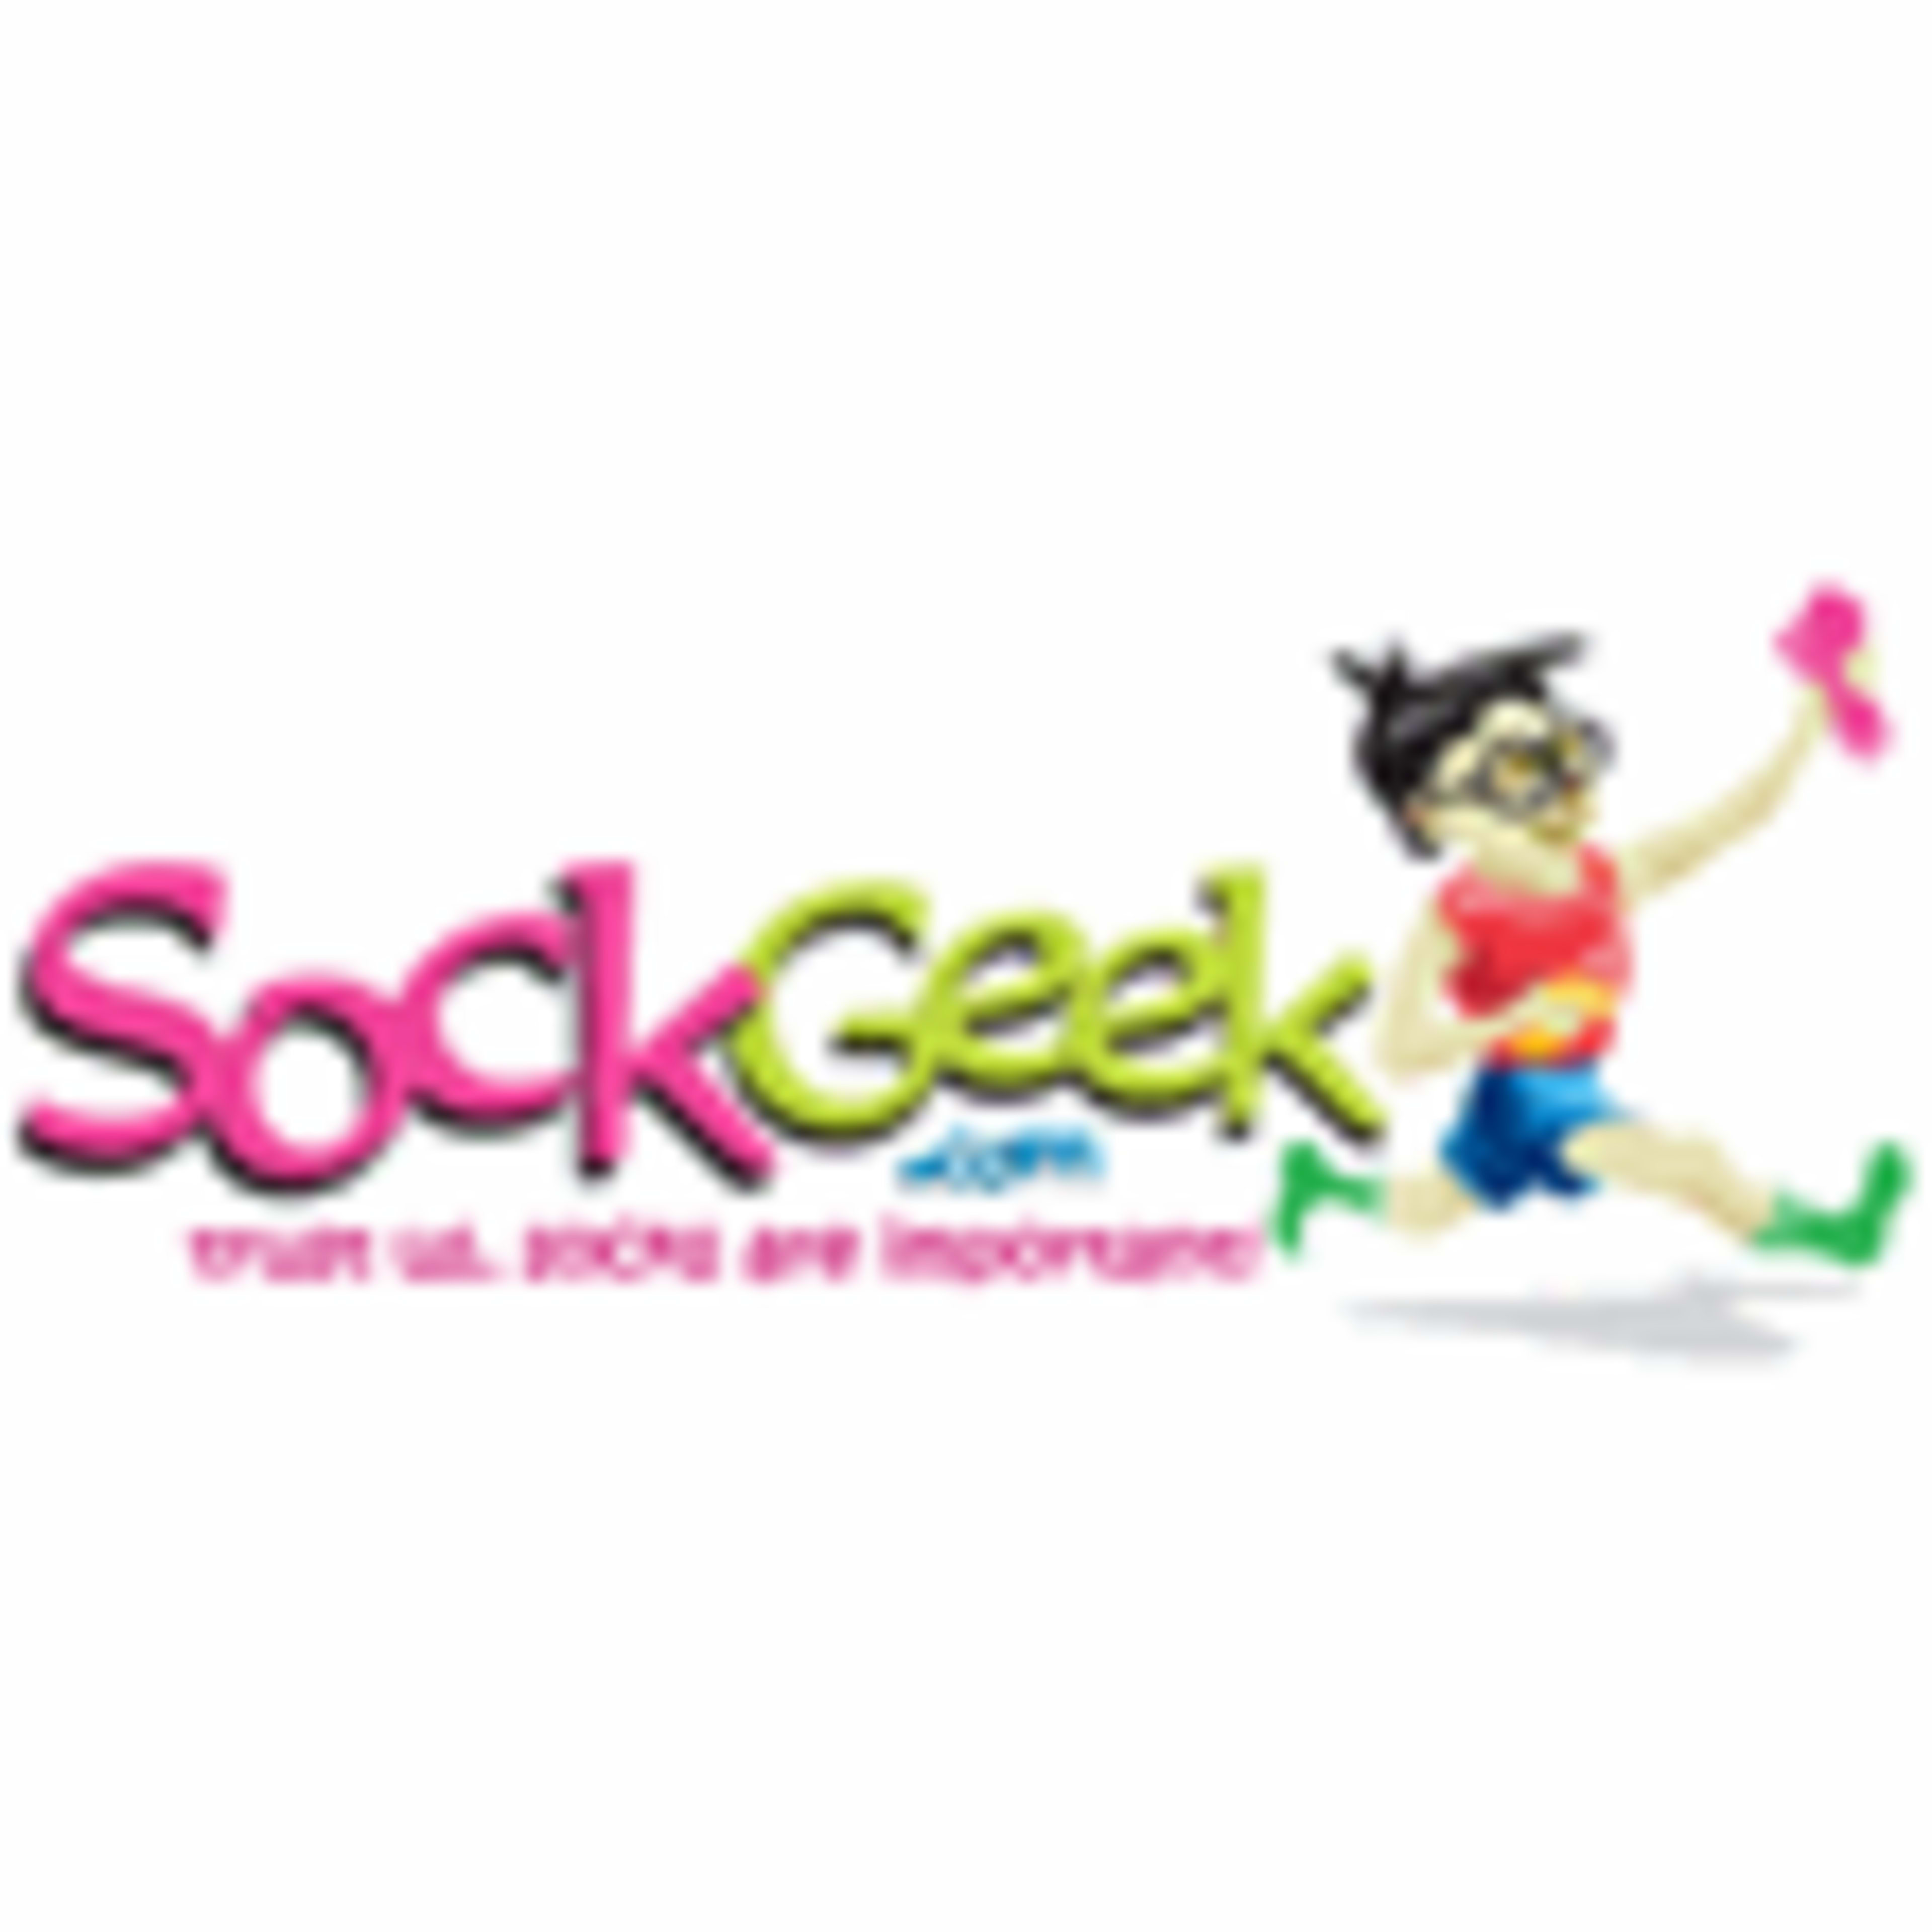 Sock GeekCode